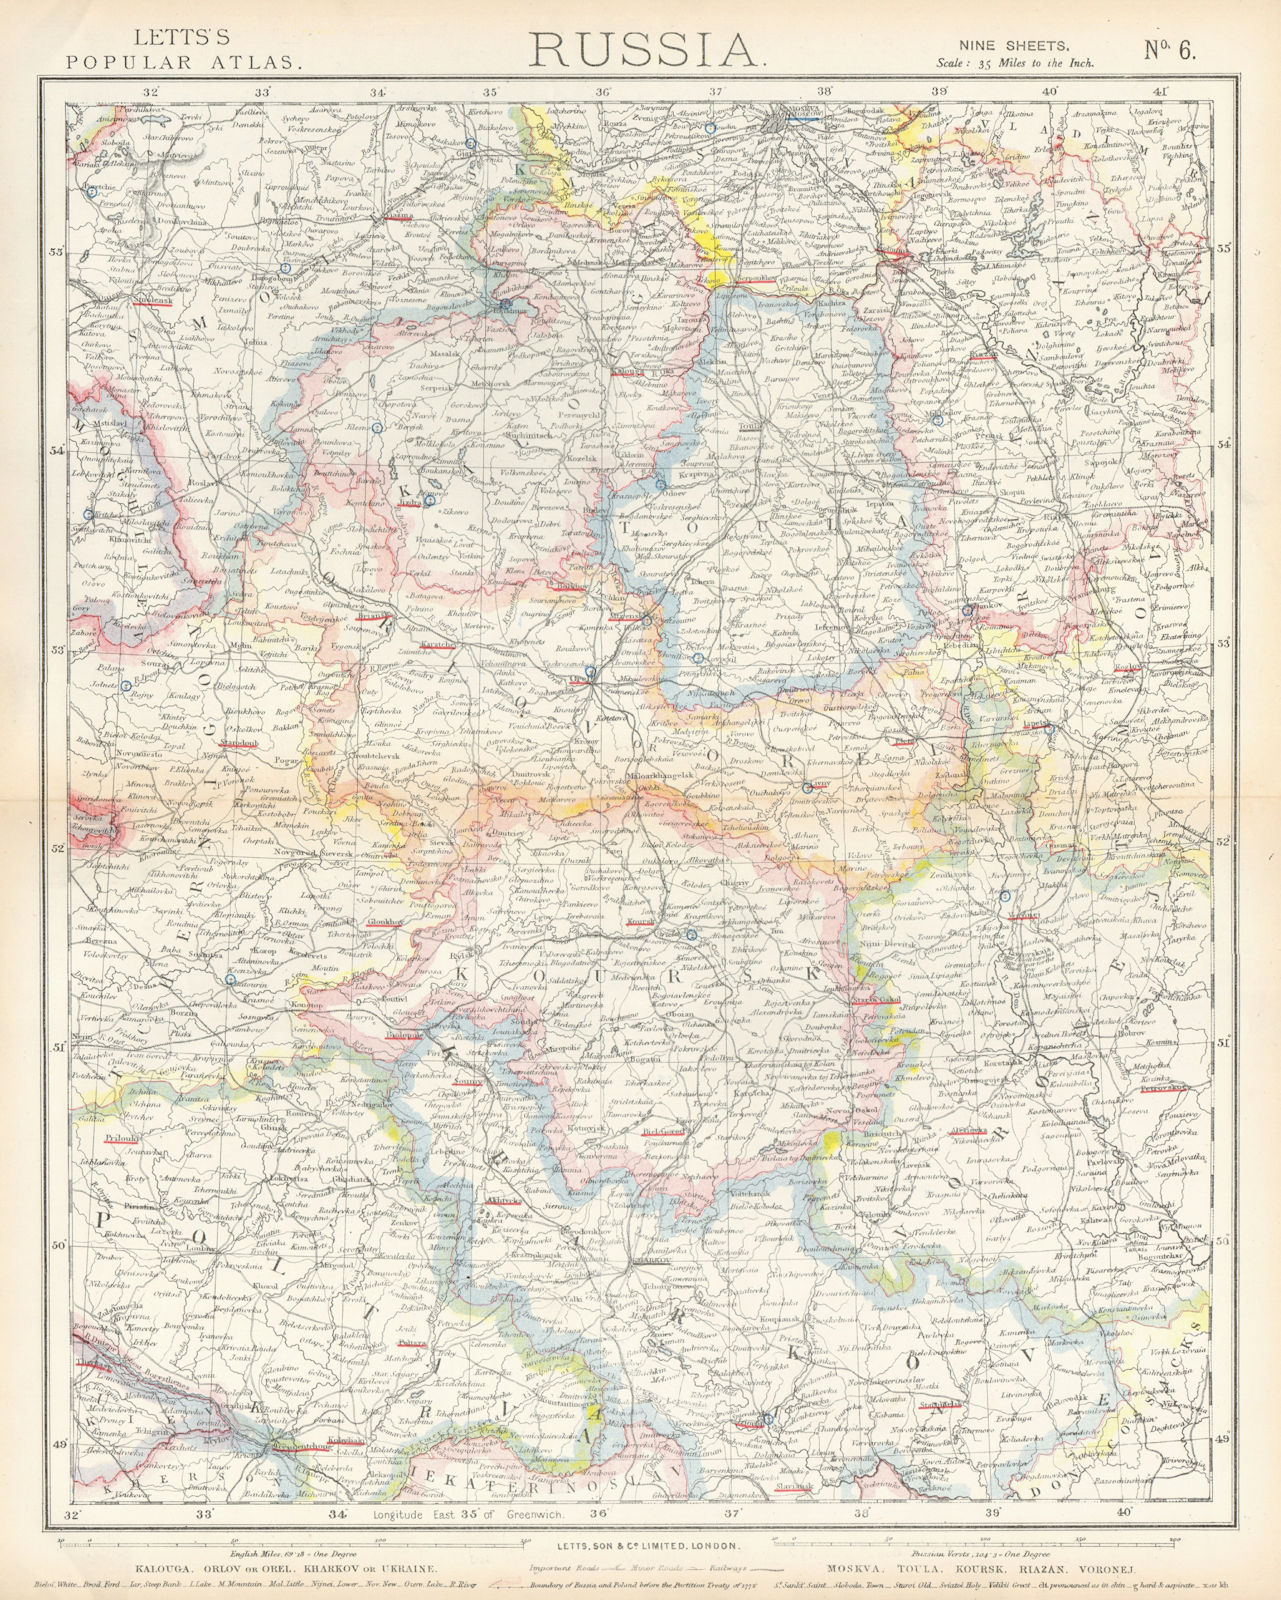 RUSSIA Kalouga Kharkov Ukraine Moscow Toula Kursk Riazan Voronej. LETTS 1883 map